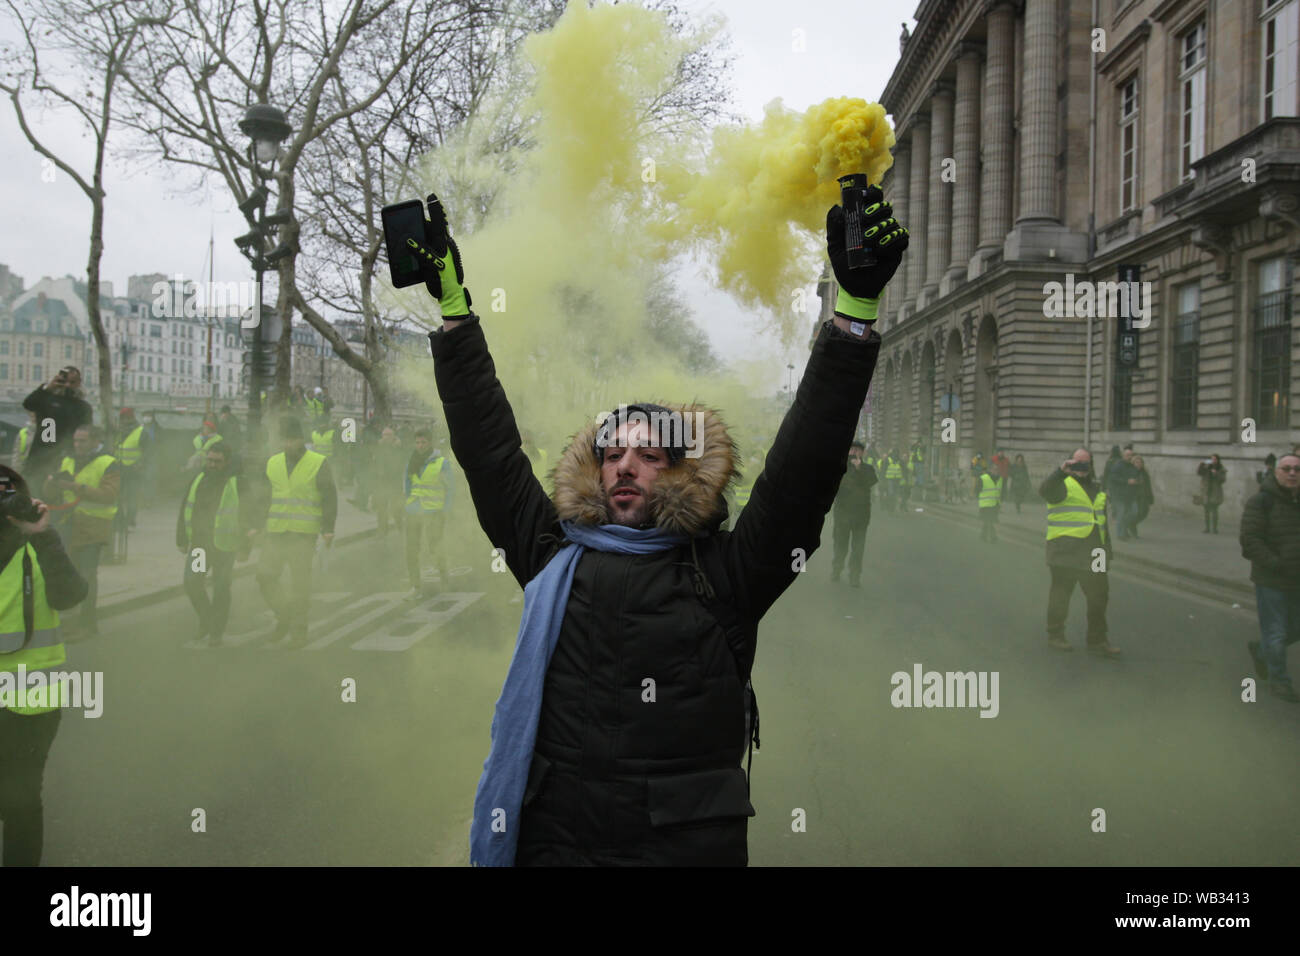 Gilet jaune portant des manifestants envoyer la fumée jaune dans l'air pendant une protestation mars en face de l'hôtel de ville à Paris le 5 janvier 2019 à Pari Banque D'Images